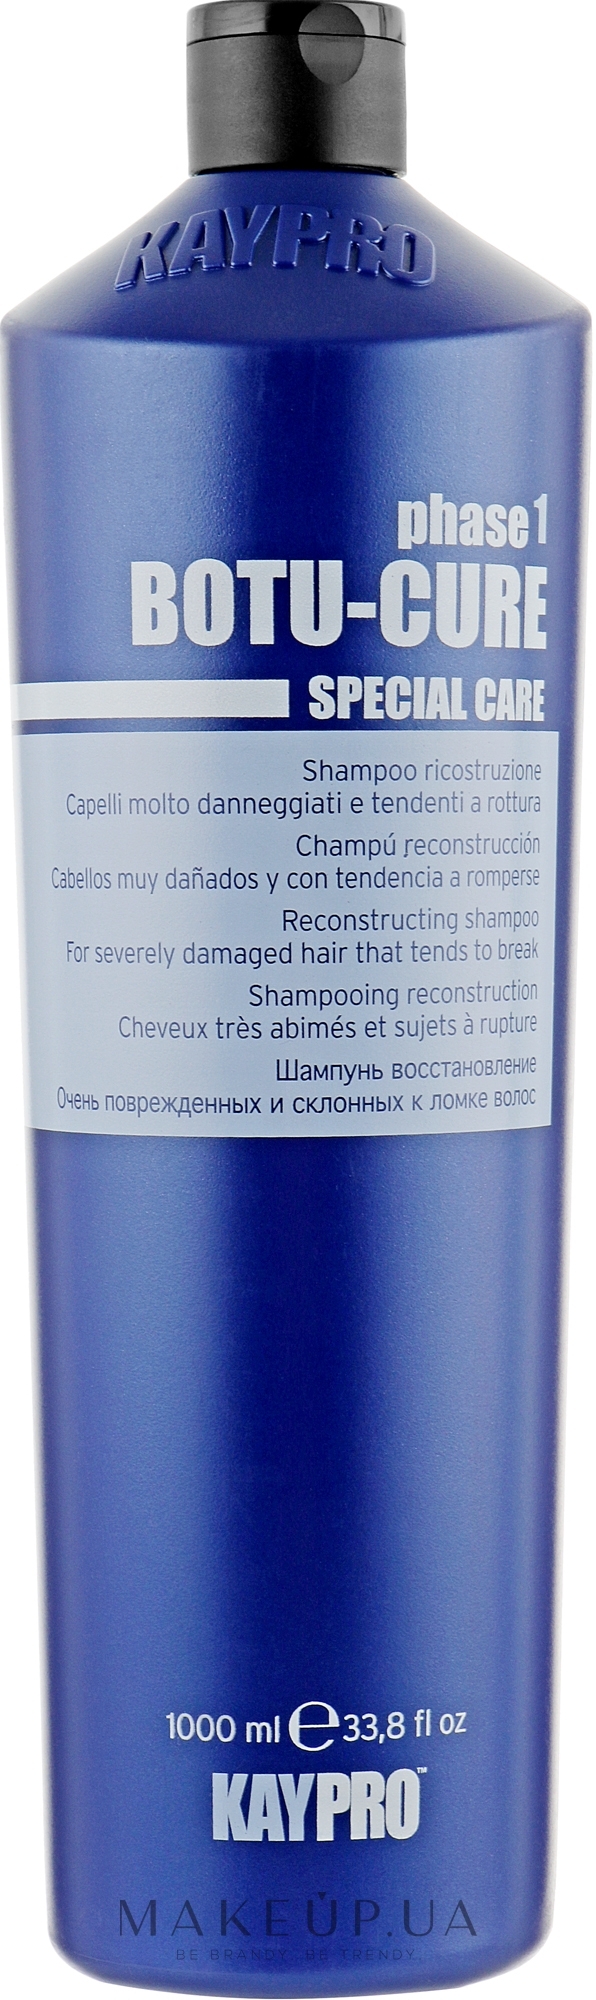 Шампунь для реконструкции волос - KayPro Special Care Boto-Cure Shampoo — фото 1000ml